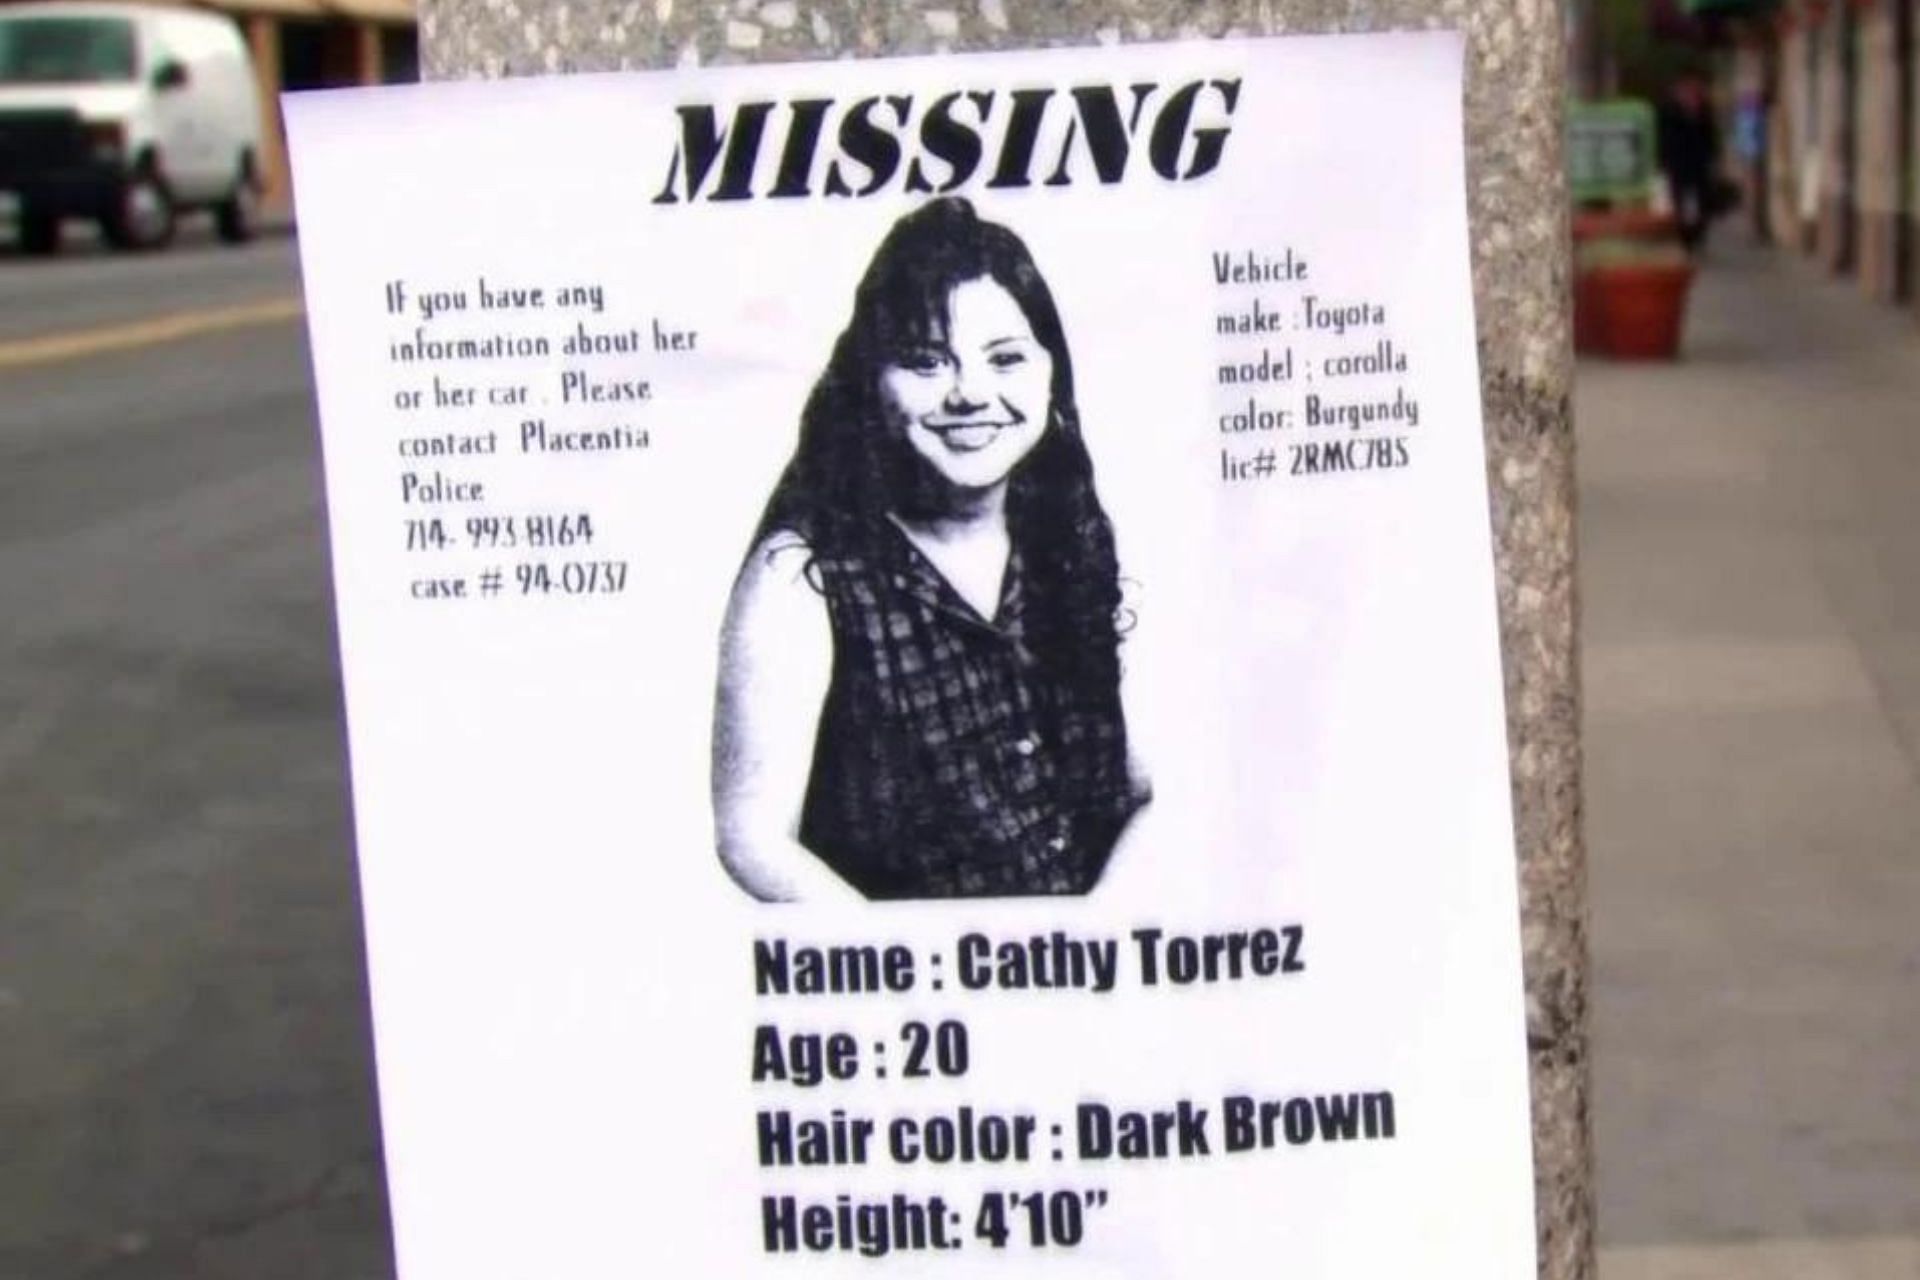 20-year-old Cathy Torrez went missing on February 12, 1994 (Image via NBC Dateline)